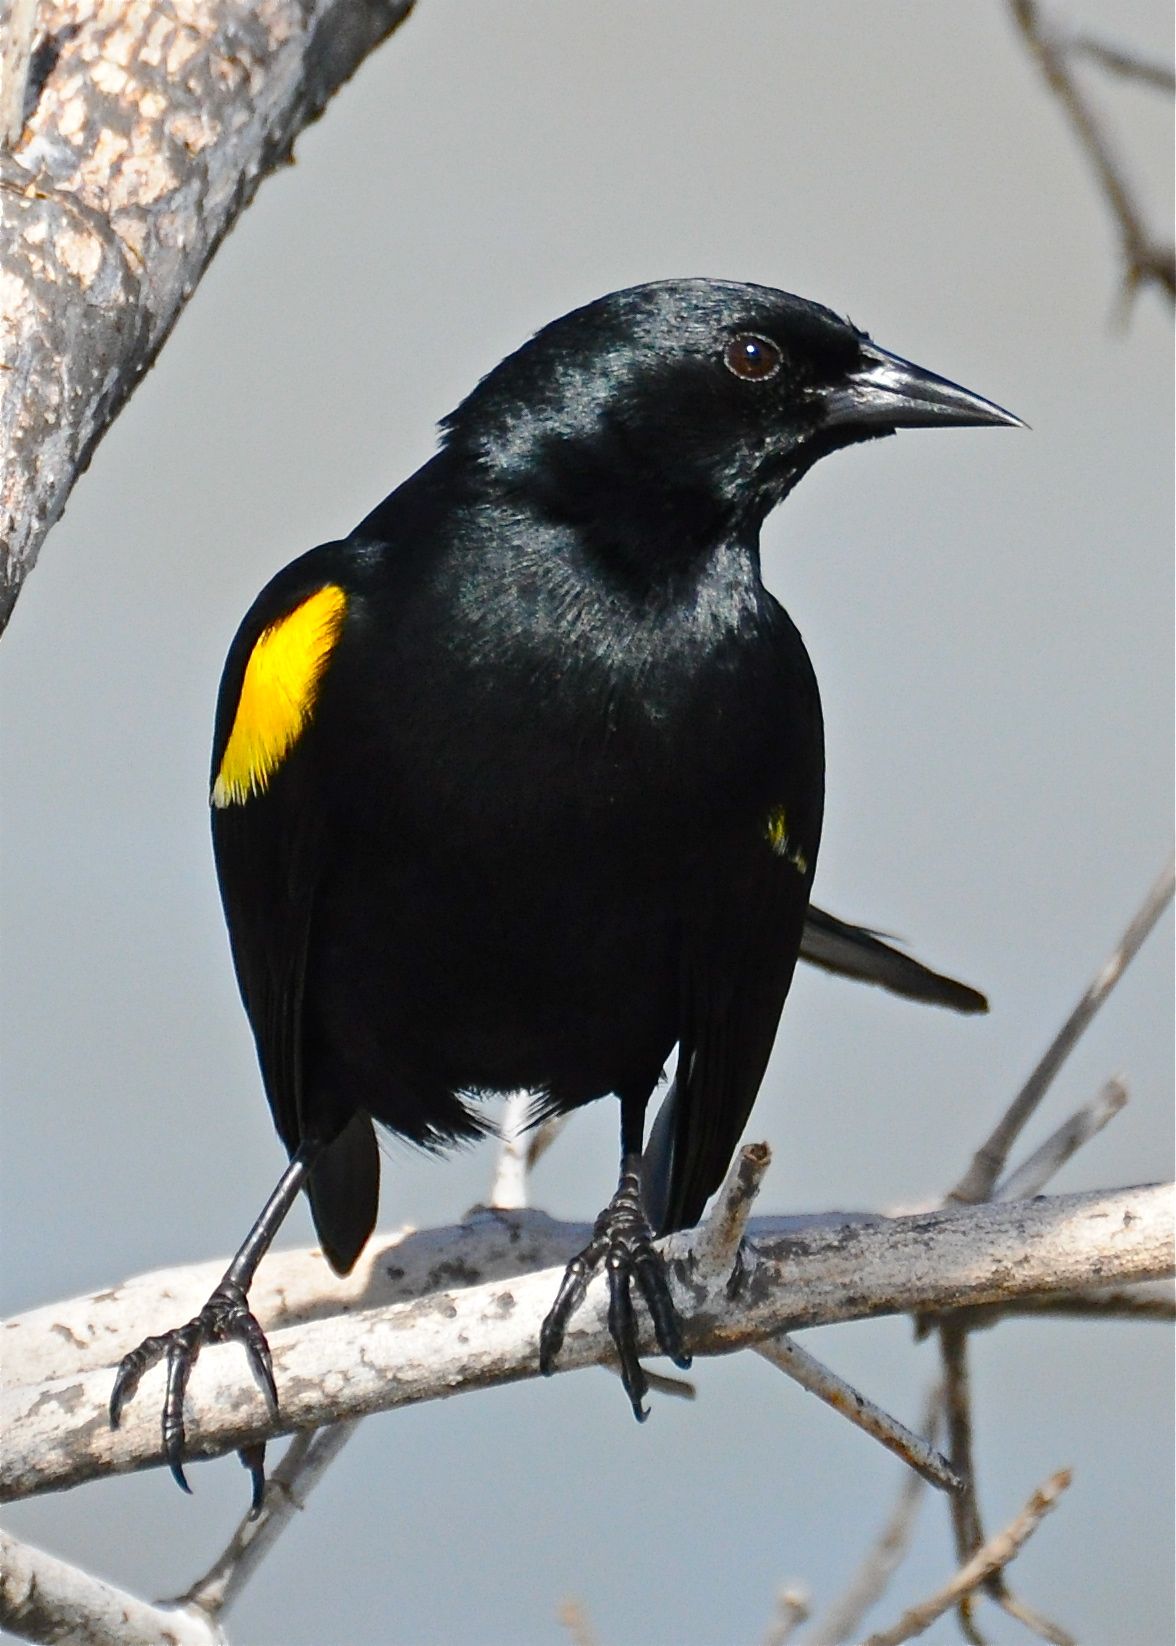 Yellow-shouldered blackbird. LAS SALINAS CABO ROJO | Mariquita ...